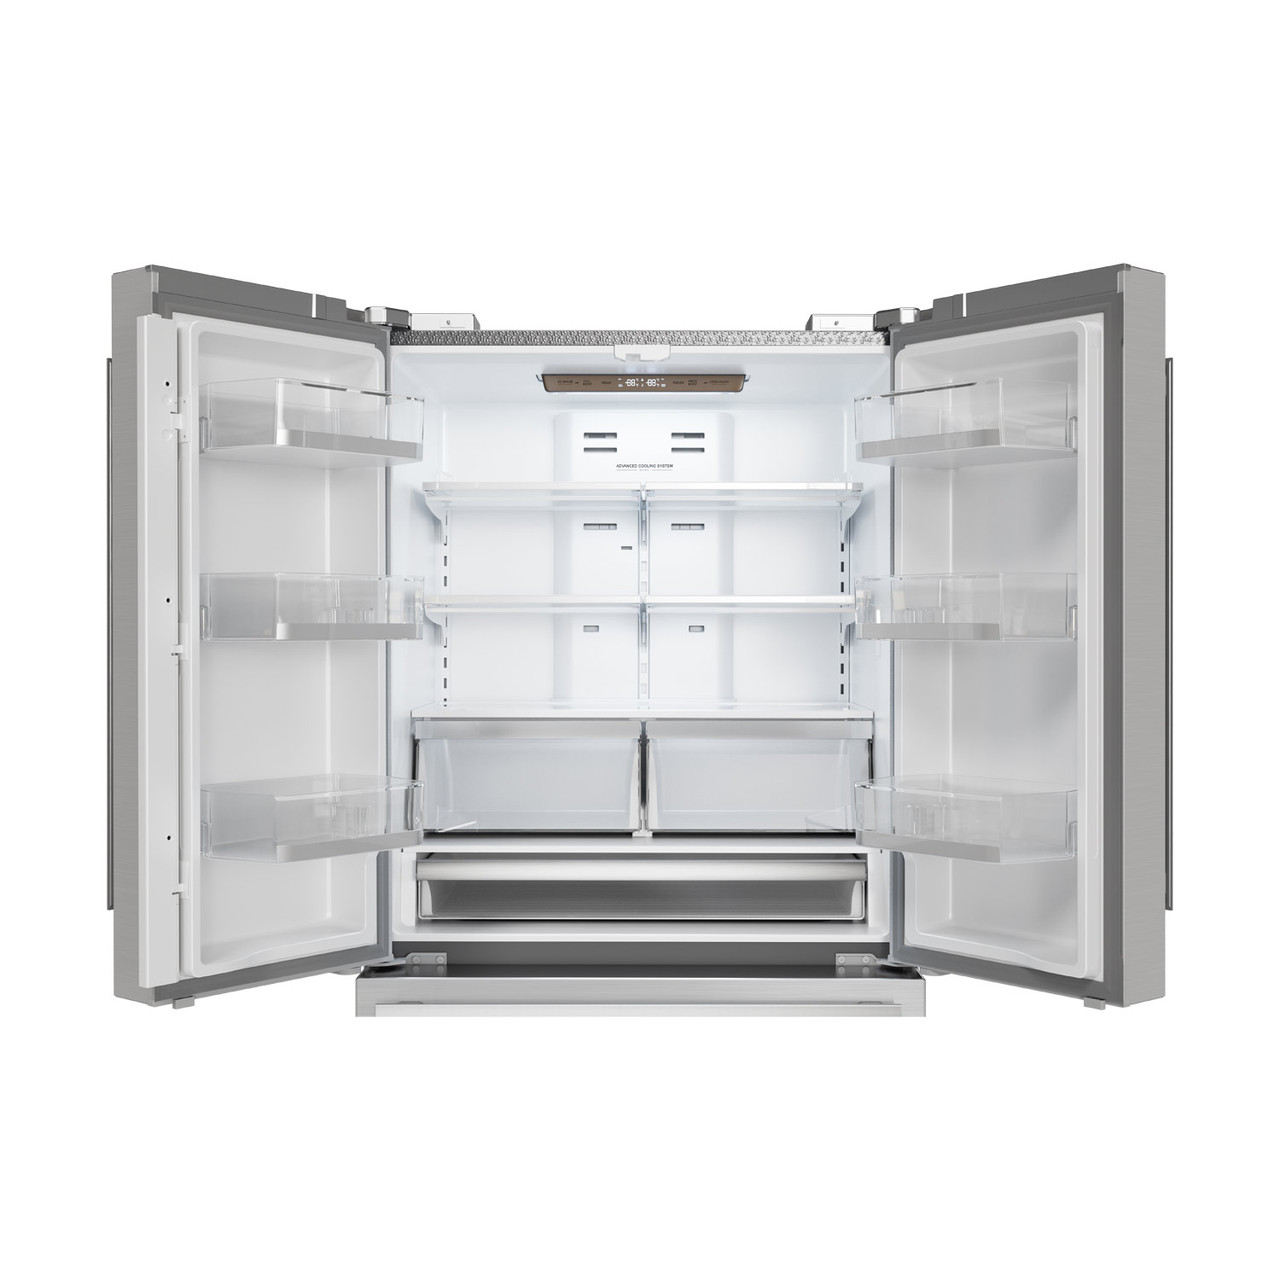 Sharp French 4-Door Counter-Depth Refrigerator (SJG2351FS) – view with doors open